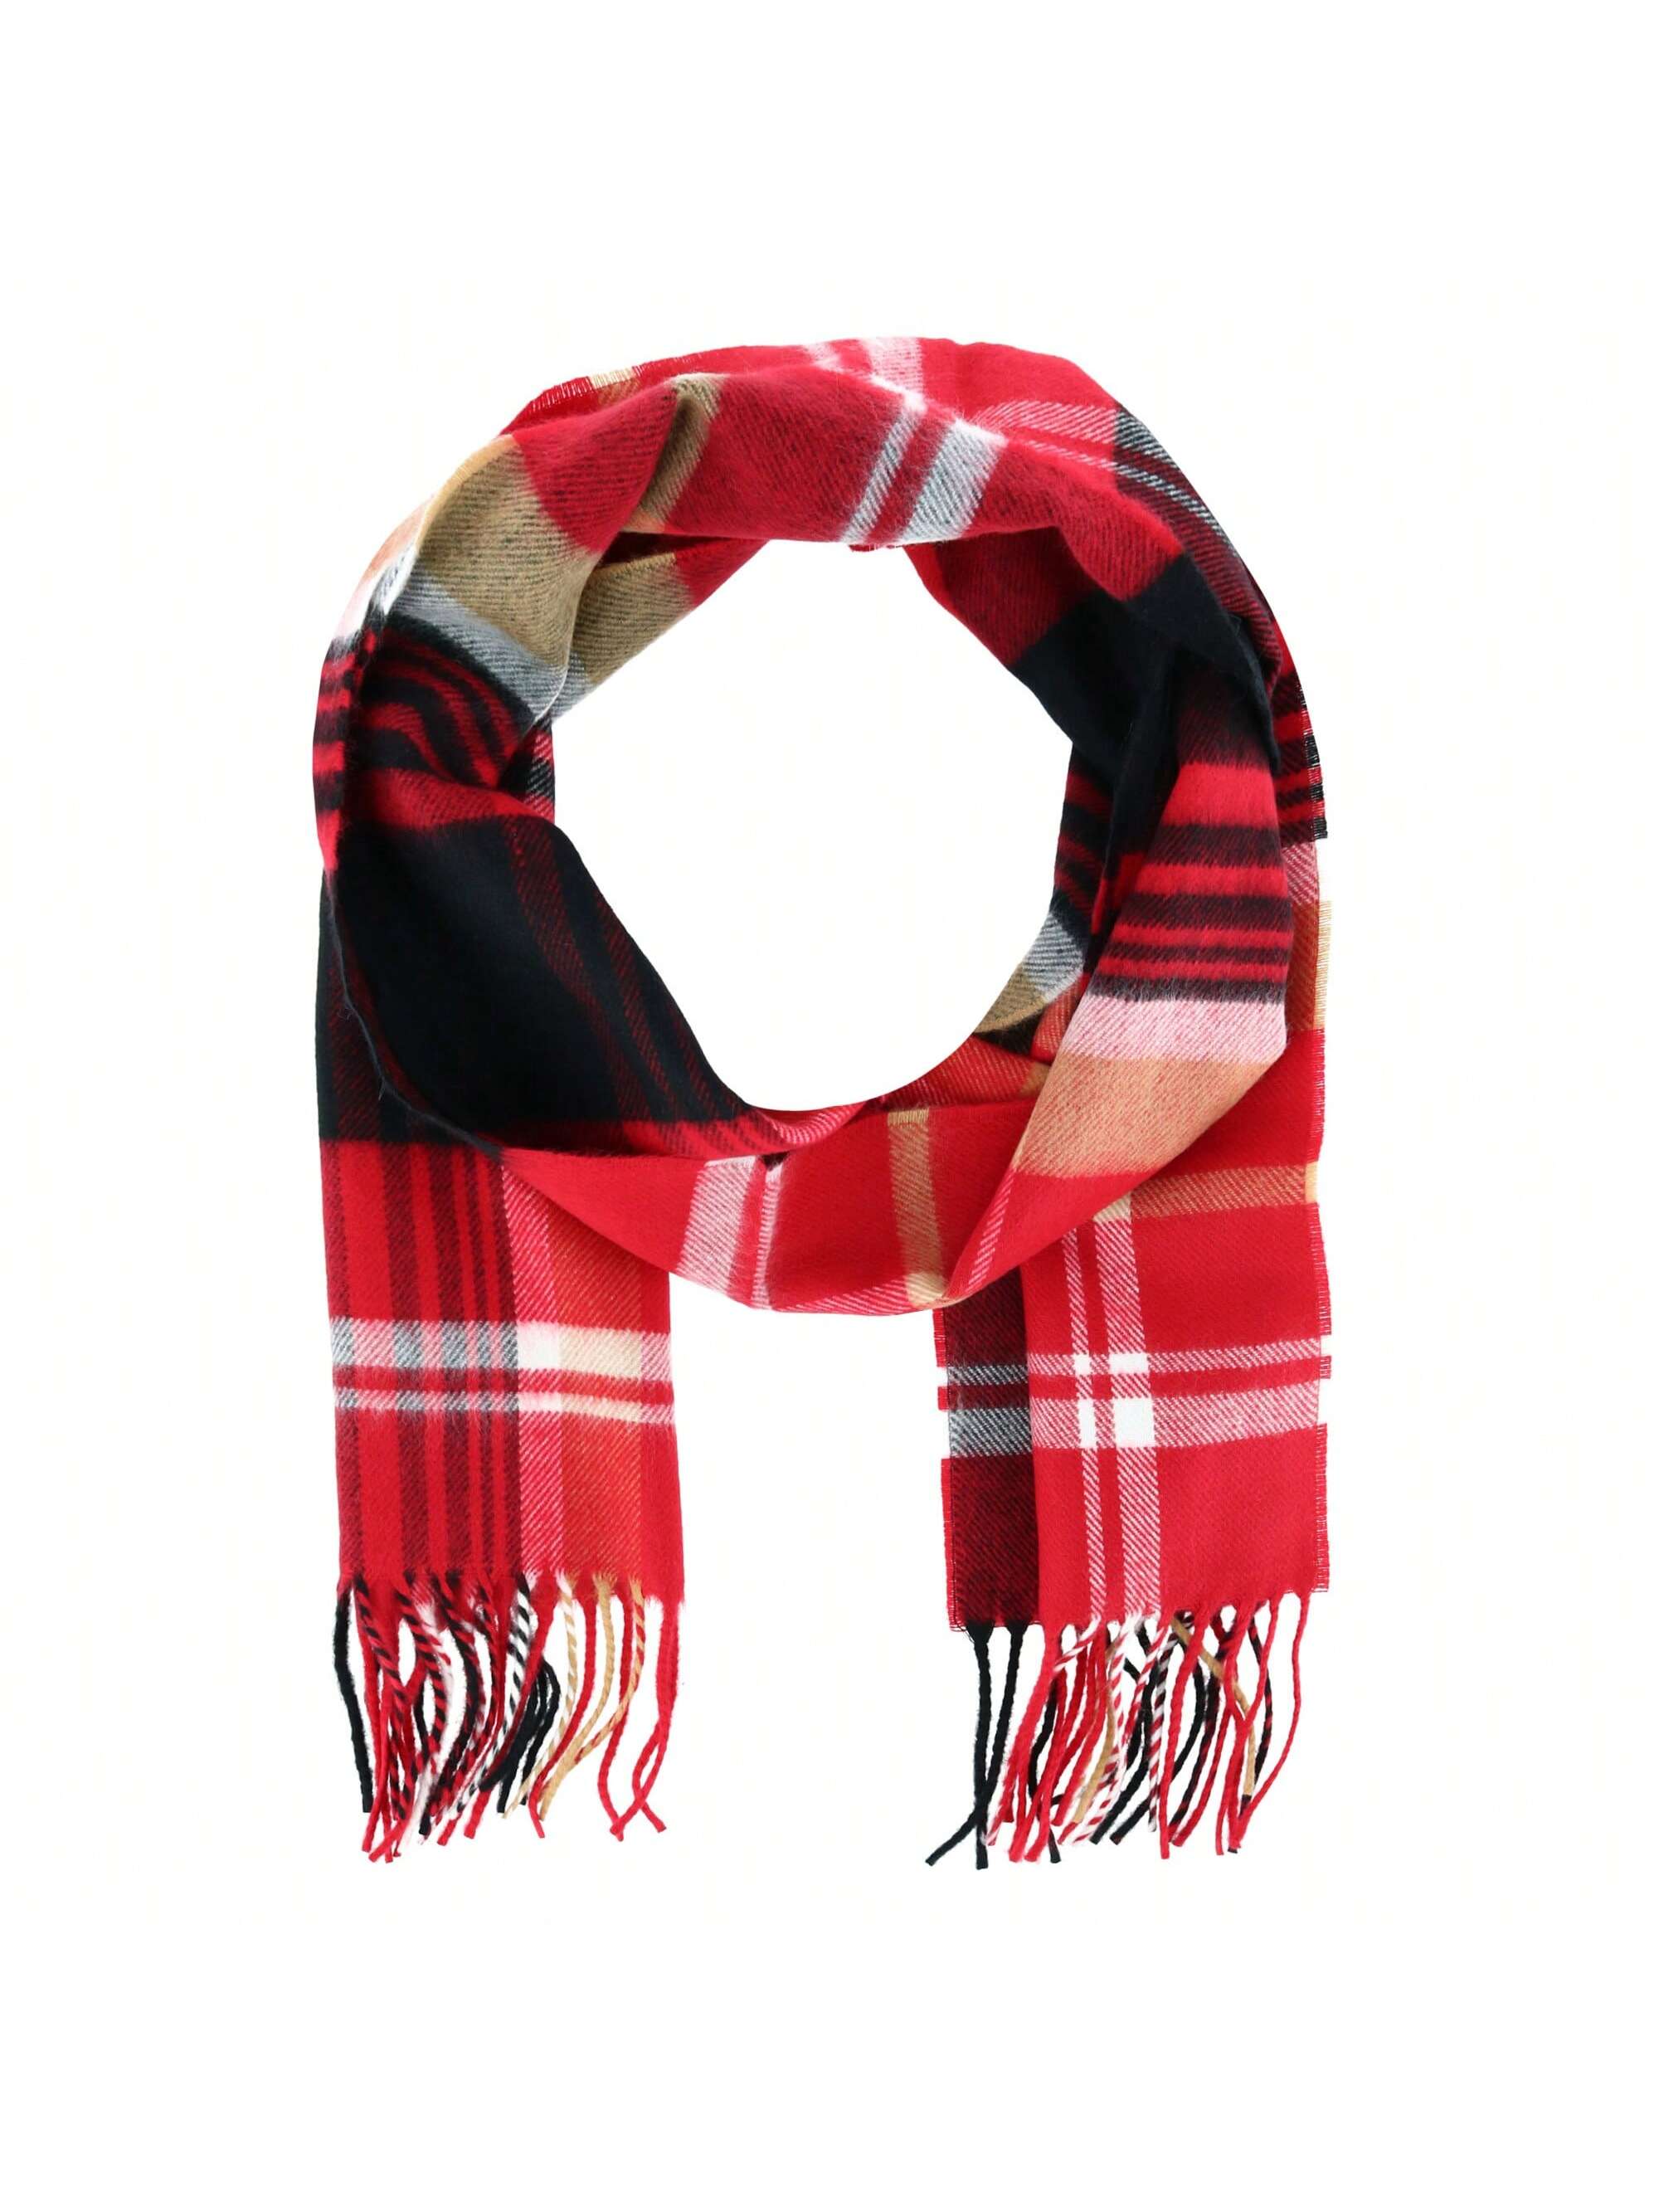 Мягкий зимний шарф в клетку David & Young, красный и черный мягкий зимний шарф в клетку david